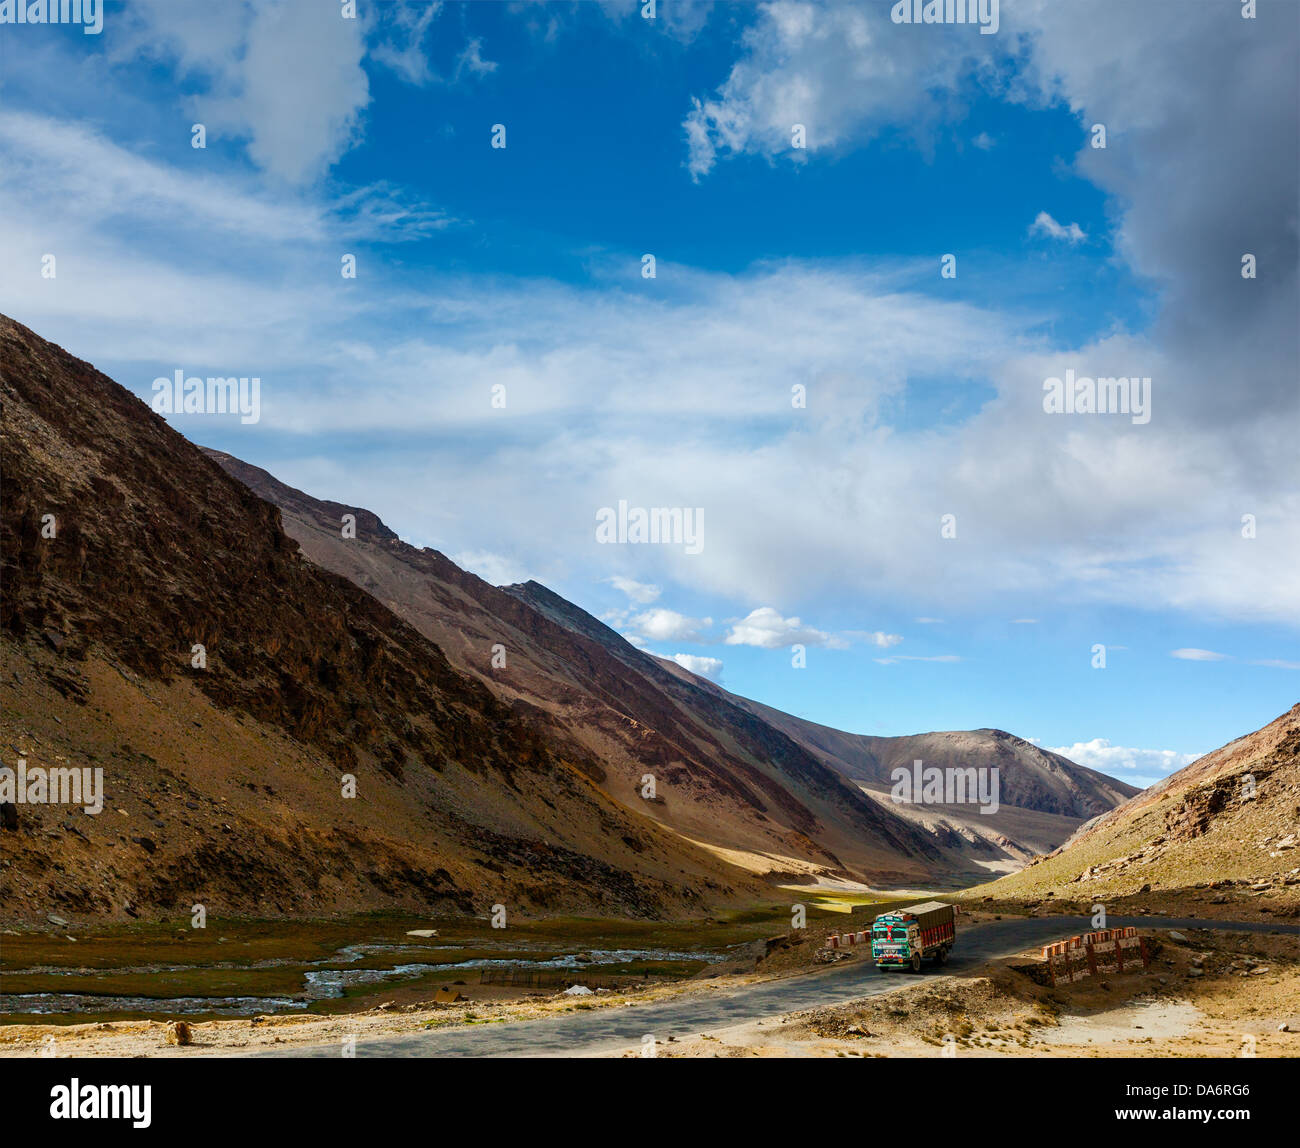 Indische Lkw unterwegs Manali-Leh. Ladakh, Indien Stockfoto